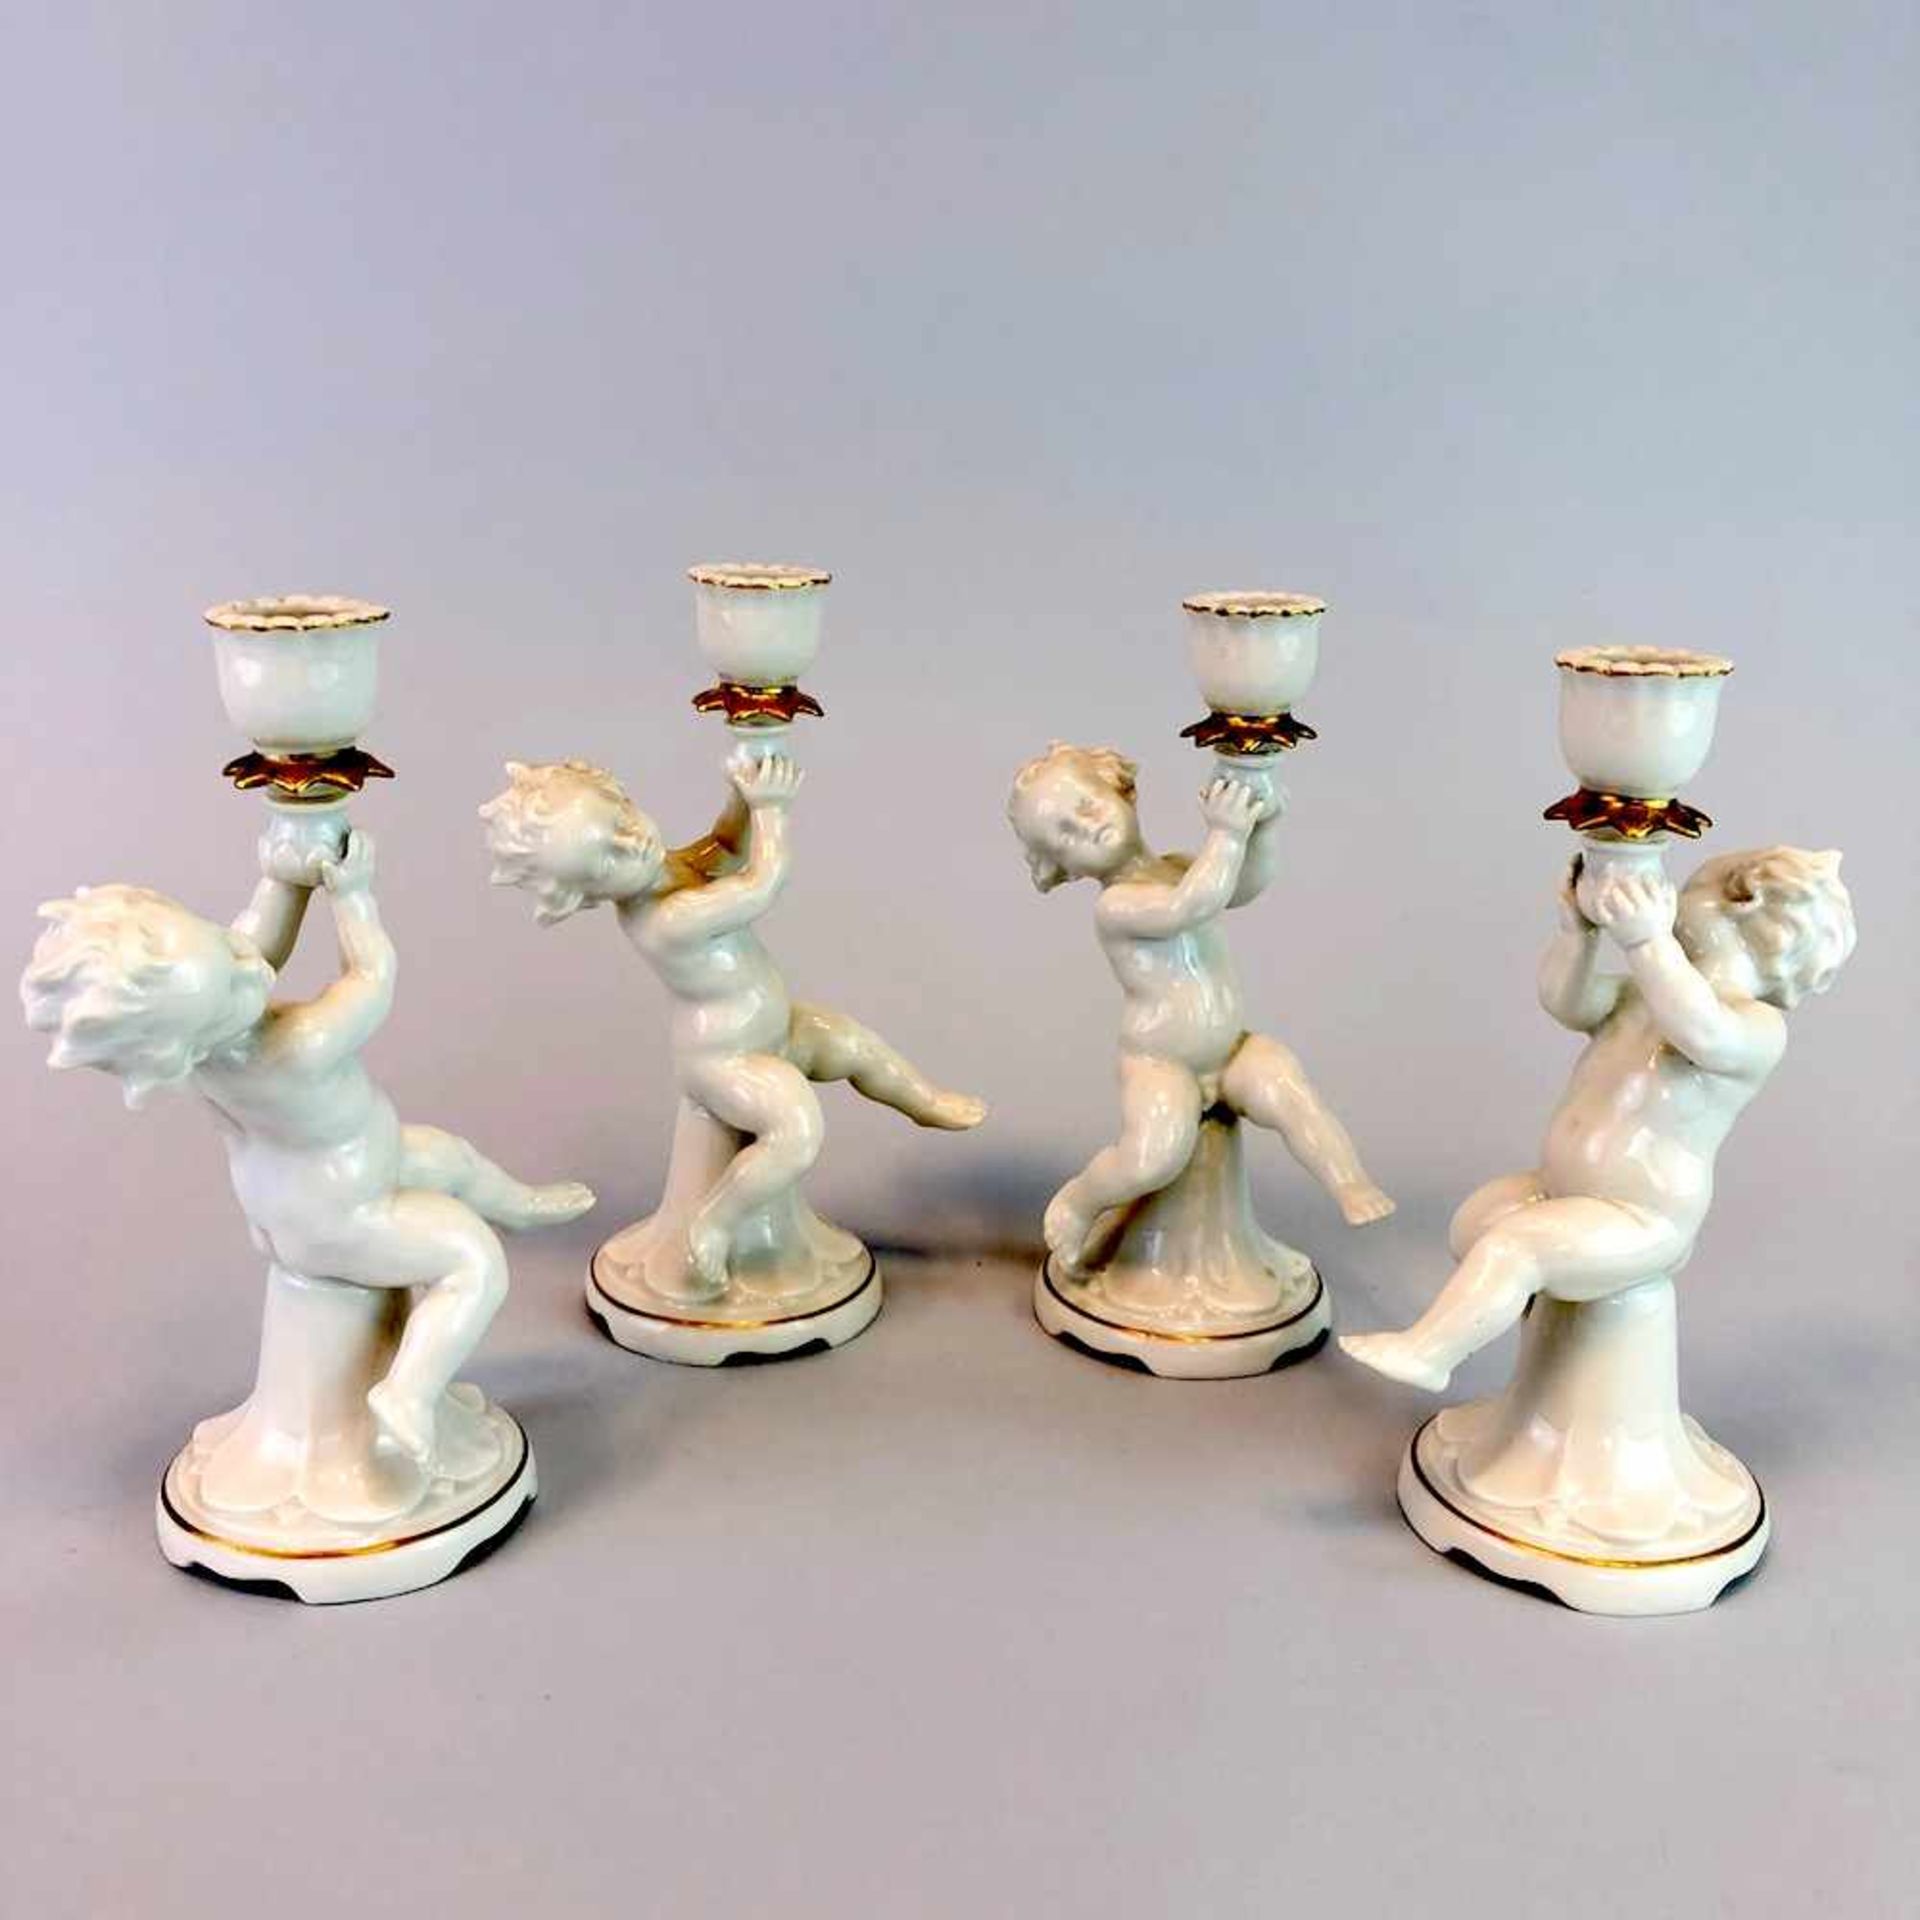 Vier Engel / Putten als Kerzenträger. Metzler & Ortloff in Ilmenau, um 1900.Porzellan, weiß